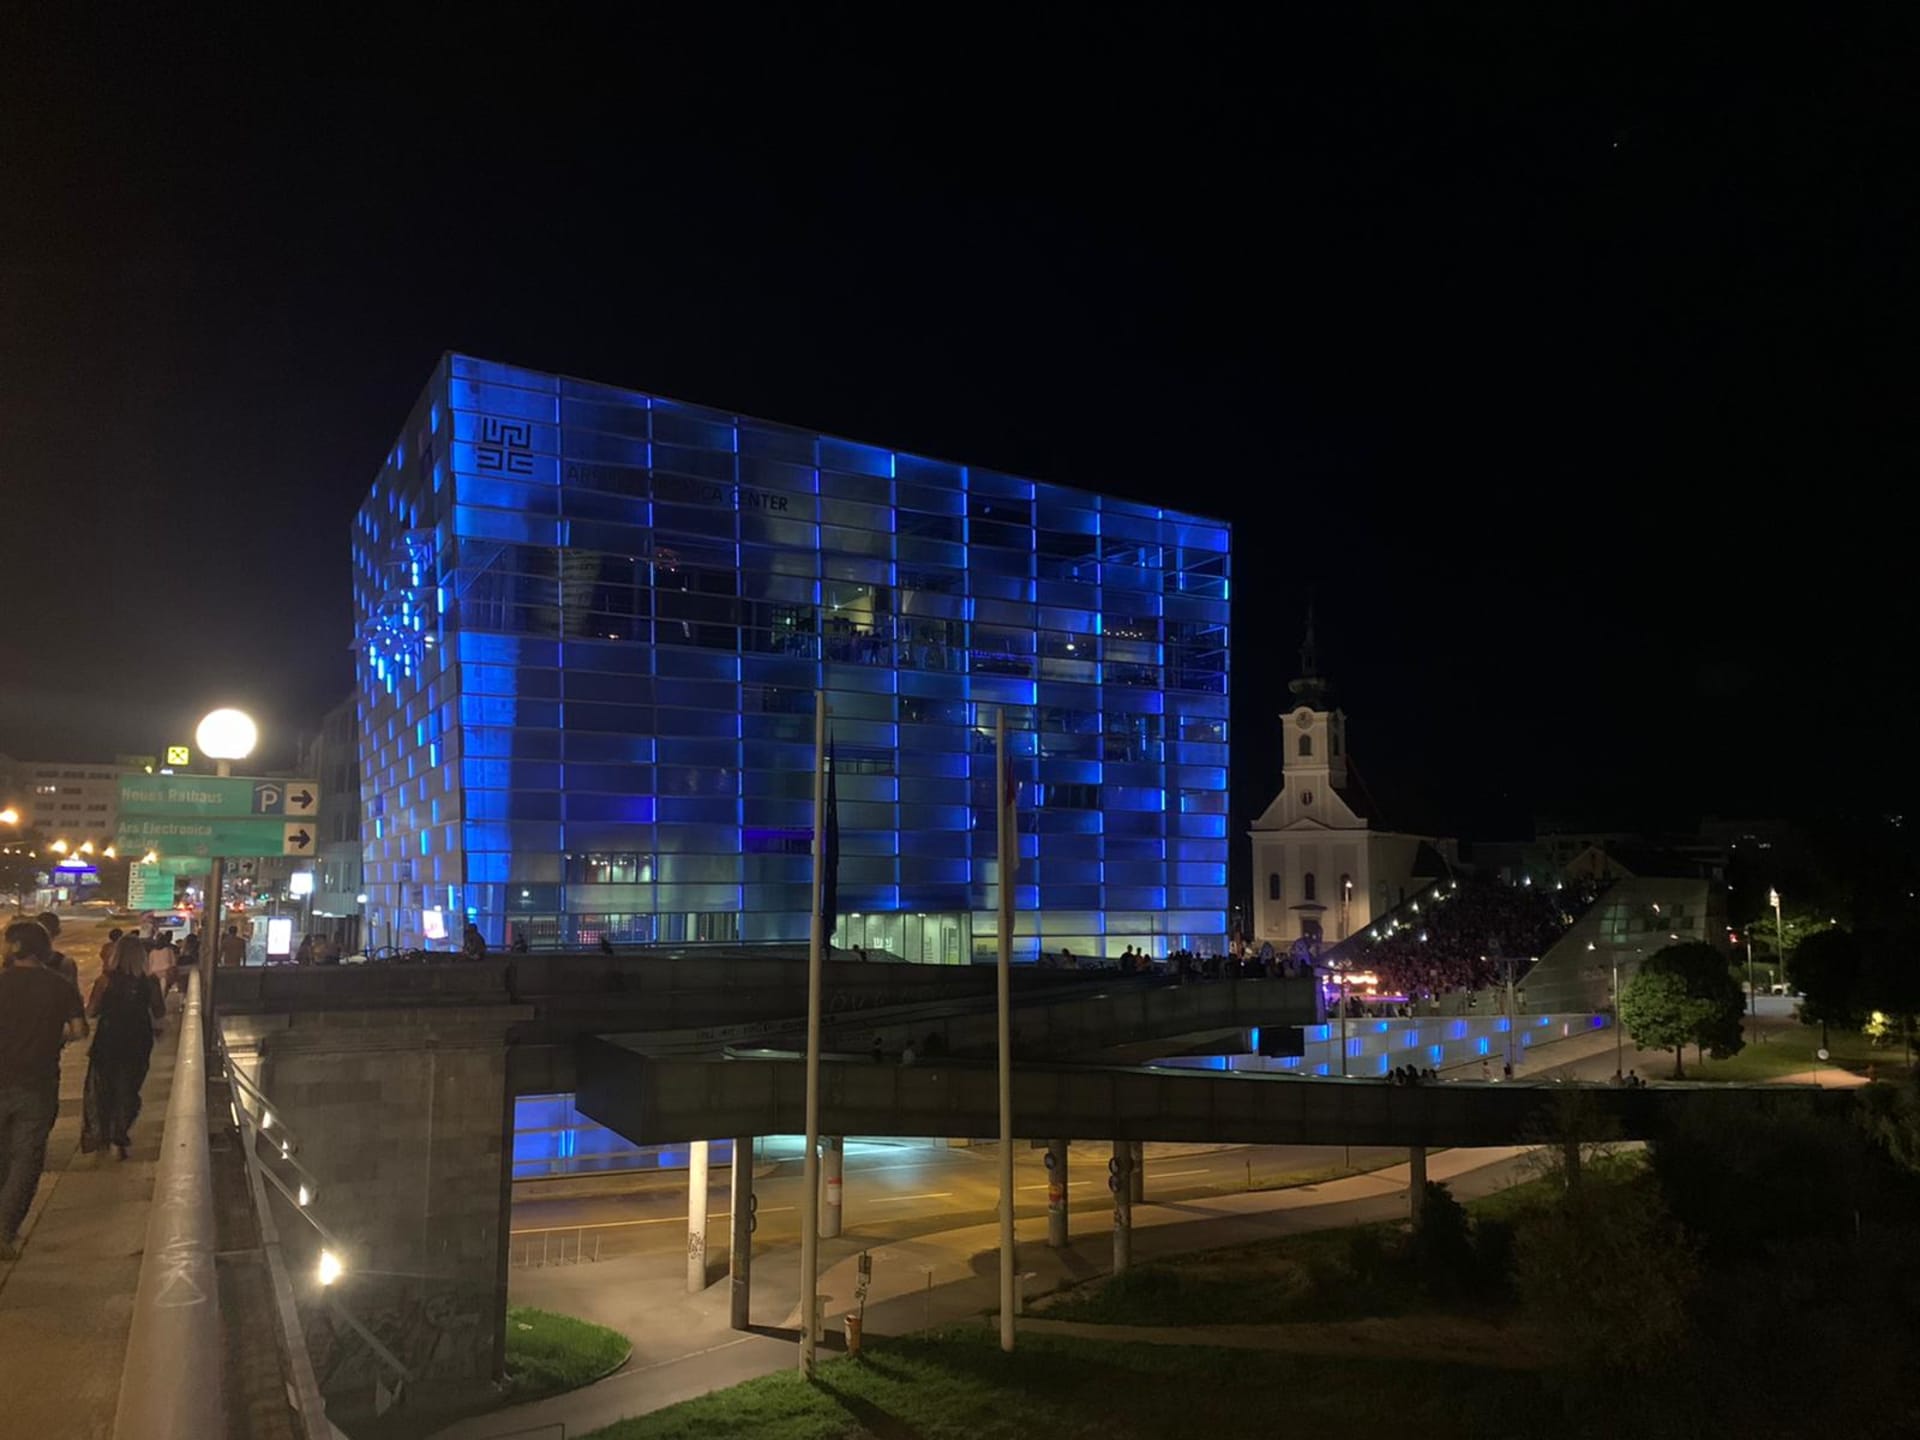 Budova Ars Electronica Center je zajímavá i po setmění.